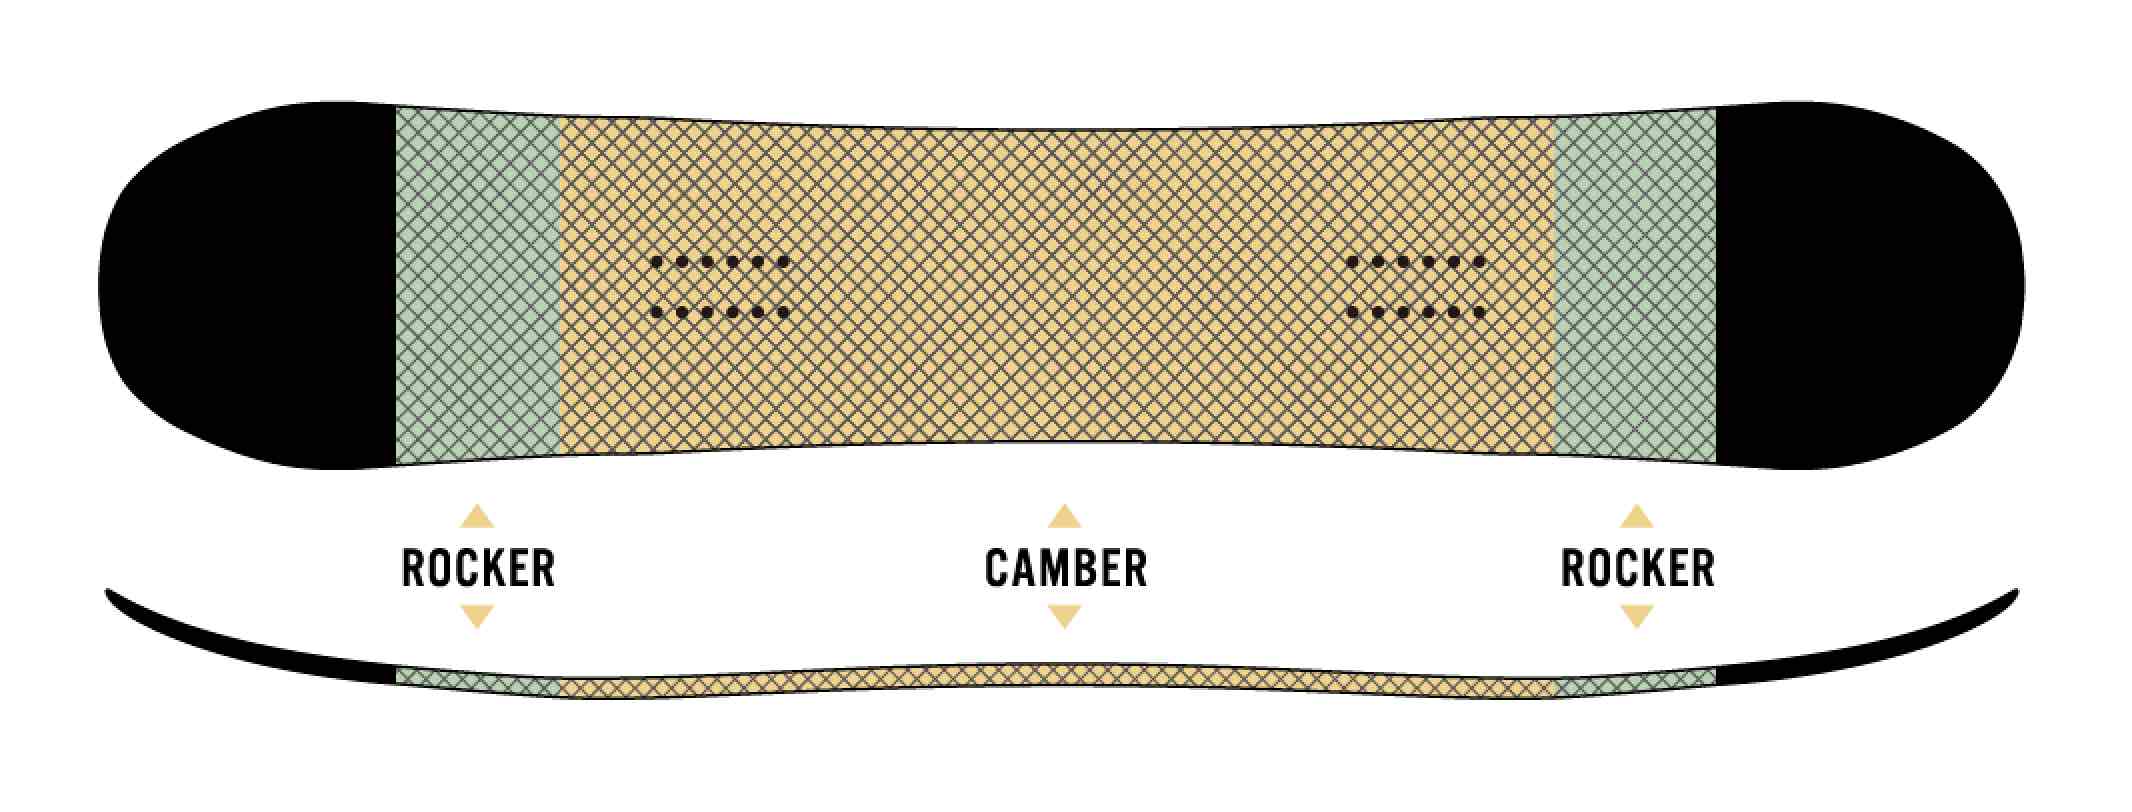 보드의 센터 부분은 캠버로, 노즈와 테일에 조금만 로커를 도입한 CAMROCK.캠버가 자랑으로 하는 깨끗한 엣지와 높은 반발력, 그리고 로커 특유의 처리의 장점을 겸비하고 있다.올 라운드에 놀 수 있는 CAMROCK 사양이 이 보드의 특징이다